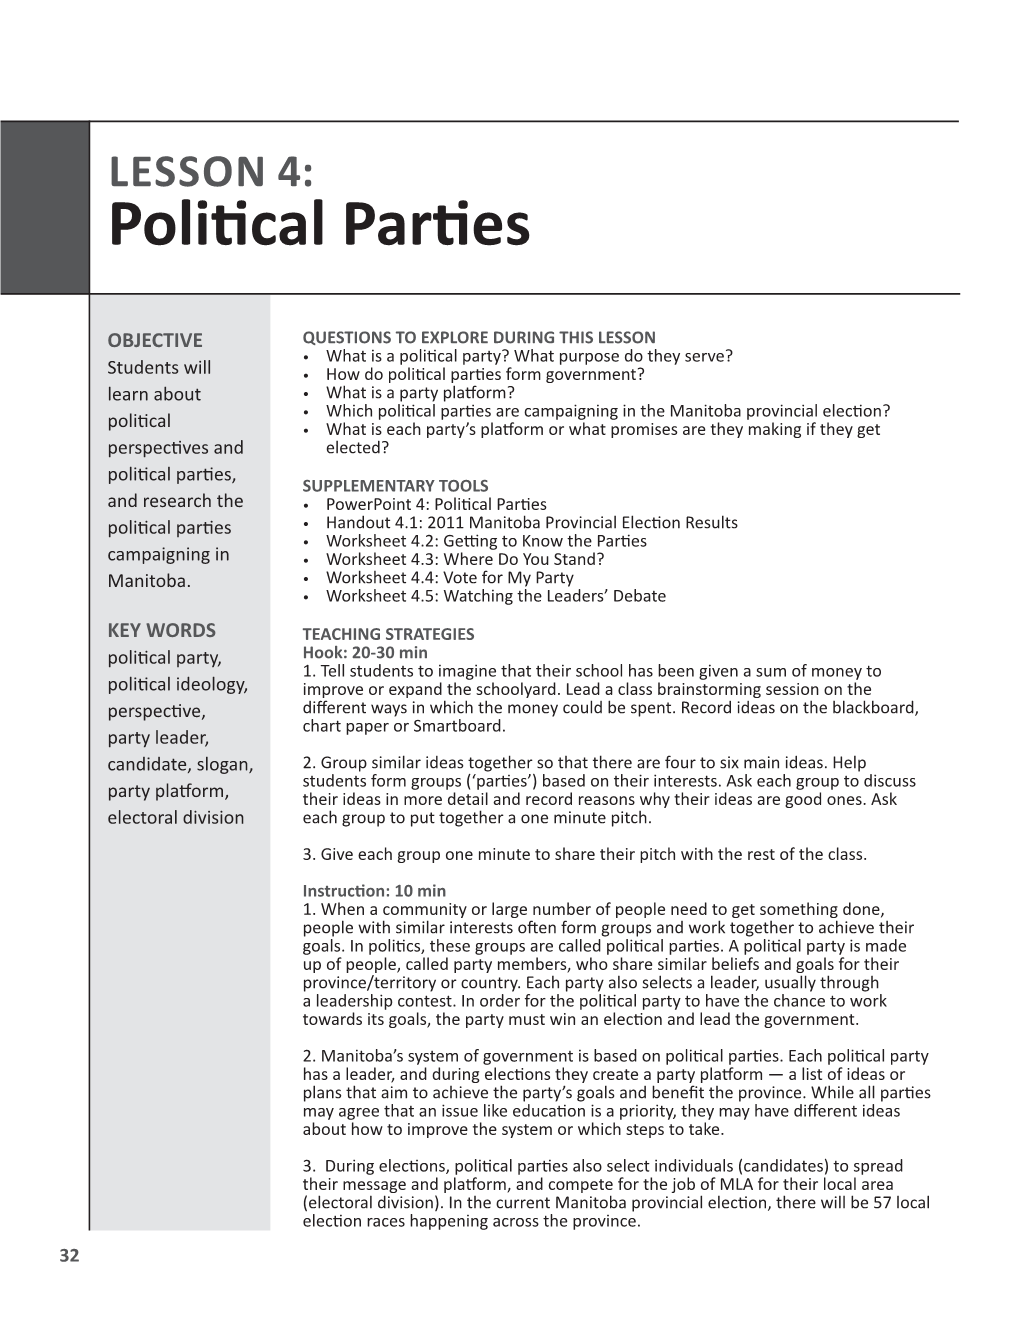 LESSON 4: Political Parties